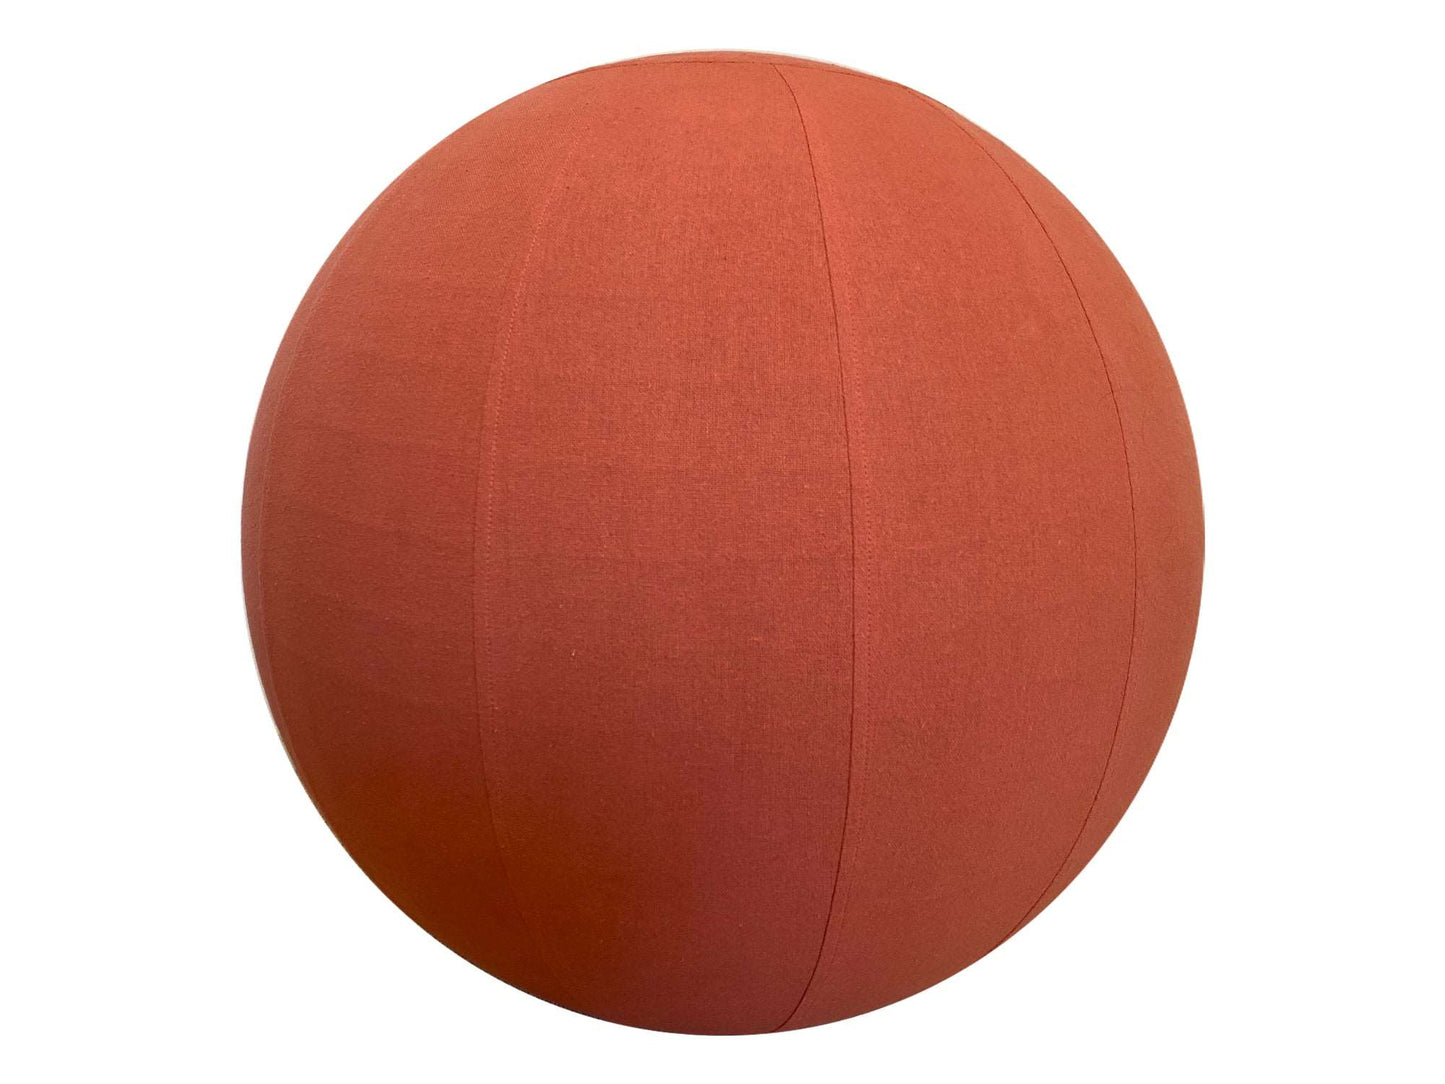 65cm Balance Ball / Yoga Ball Cover: Coral